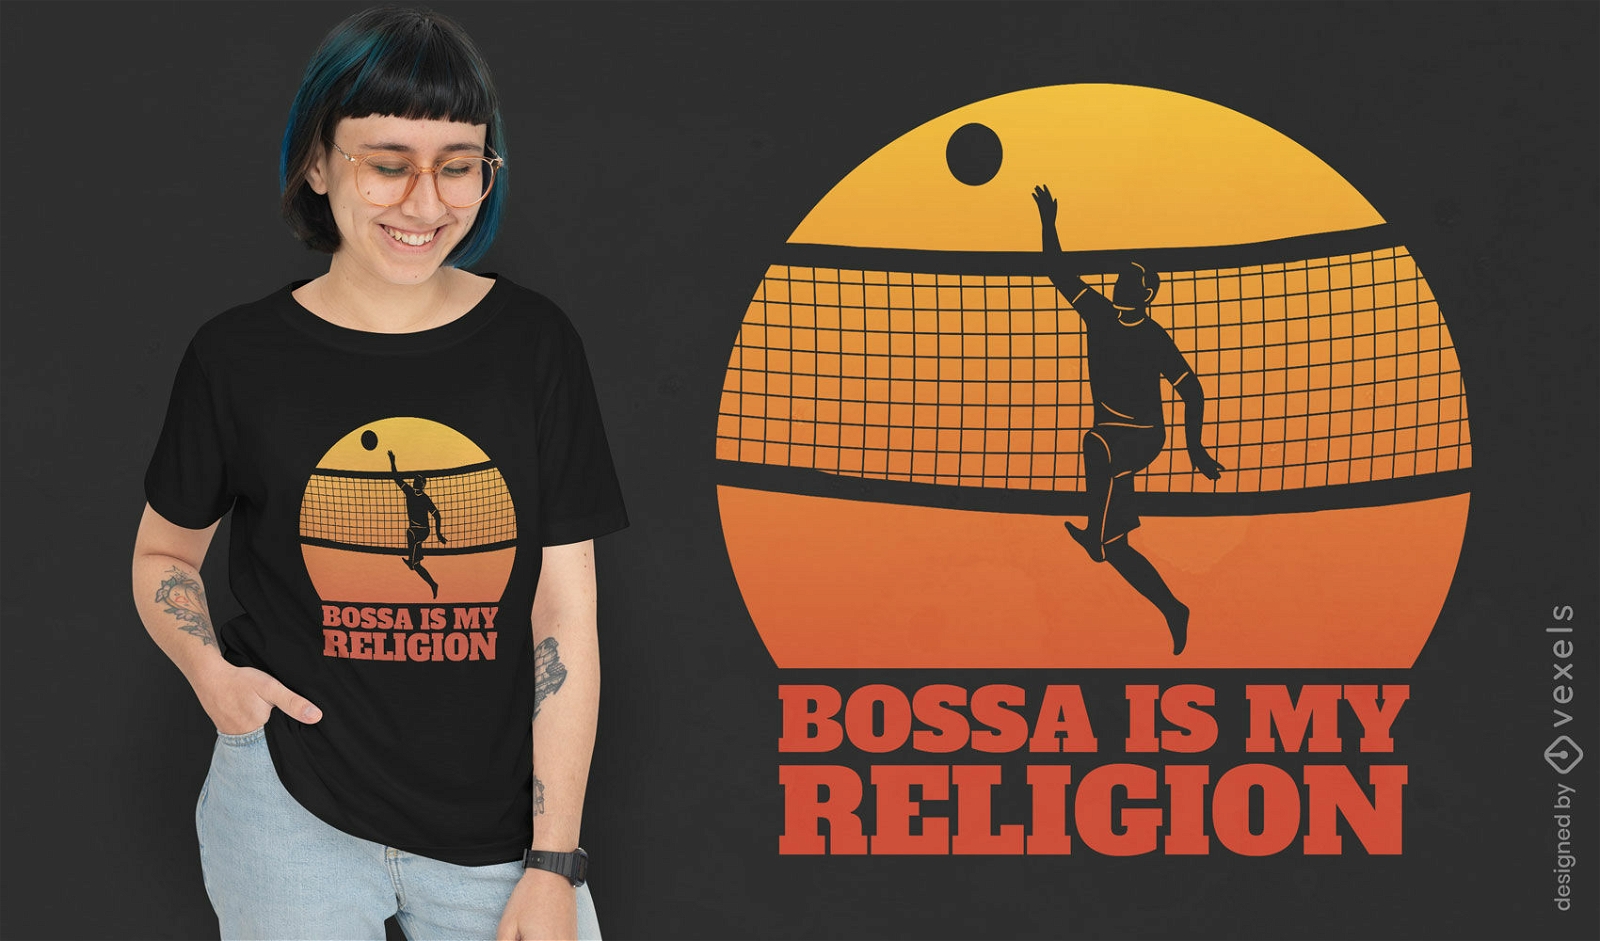 Bossaball é minha religião design de t-shirt